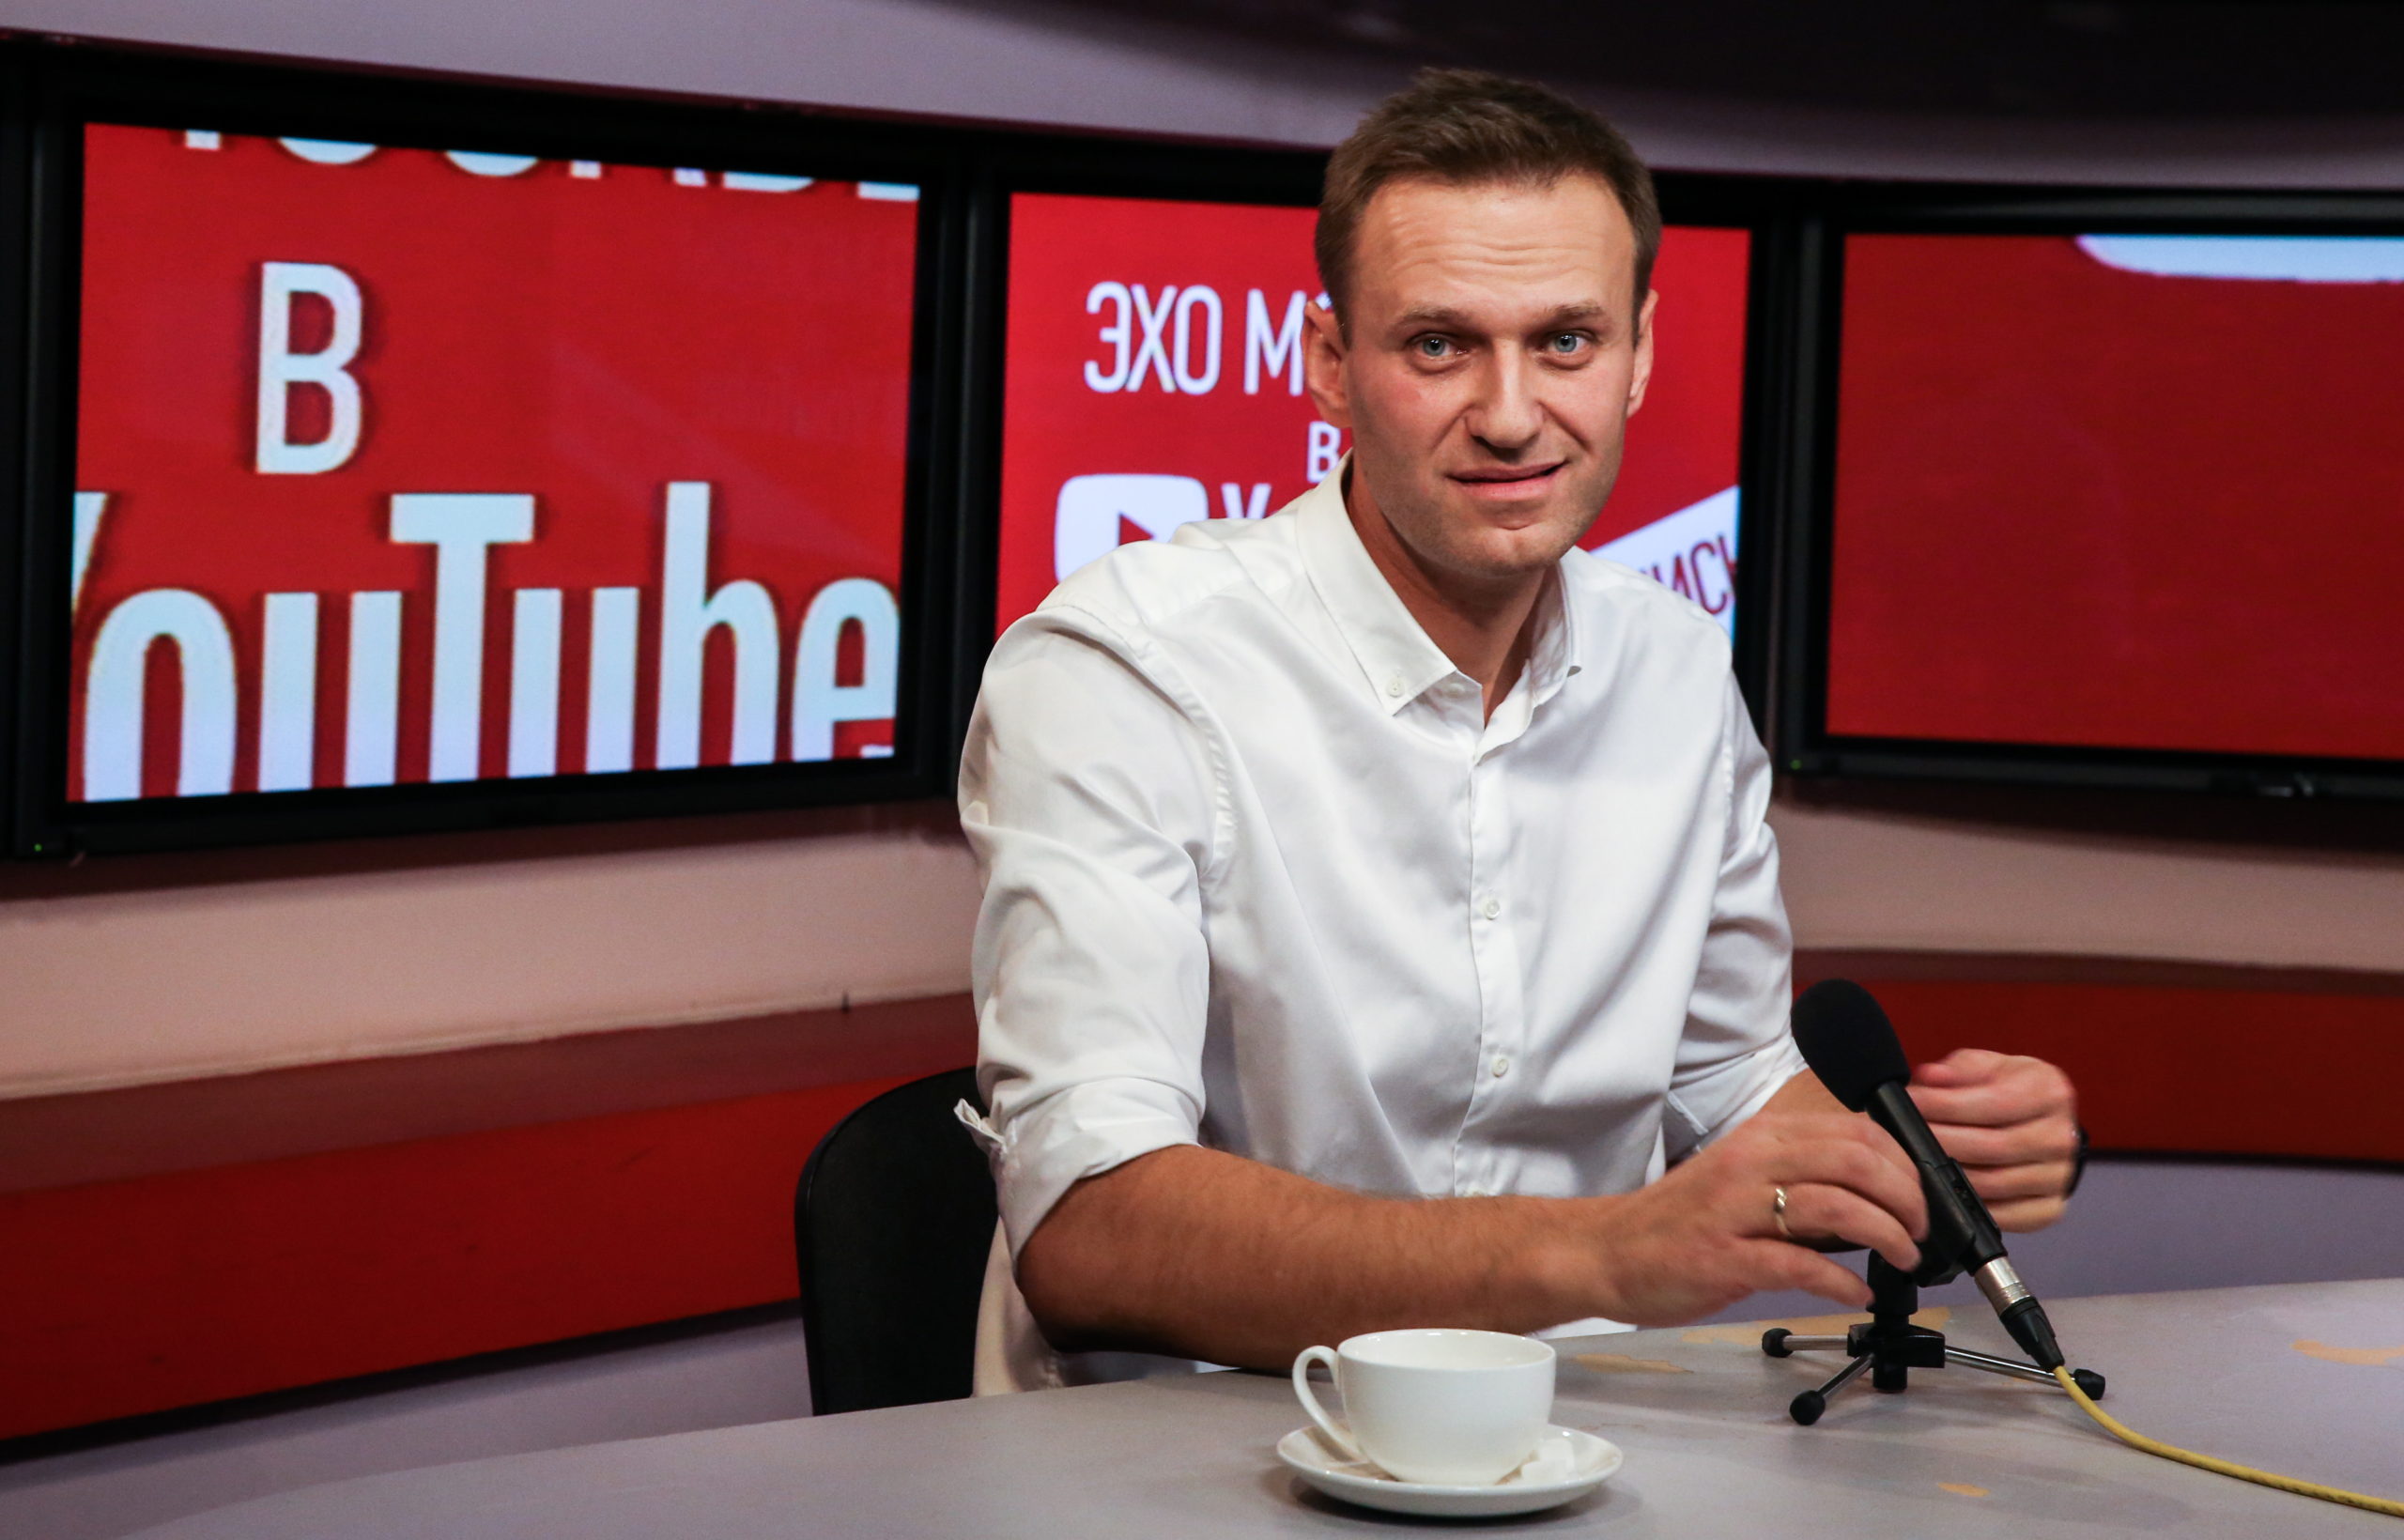 Ютуб новости сегодня прямой эфир. Навальный Эхо Москвы.